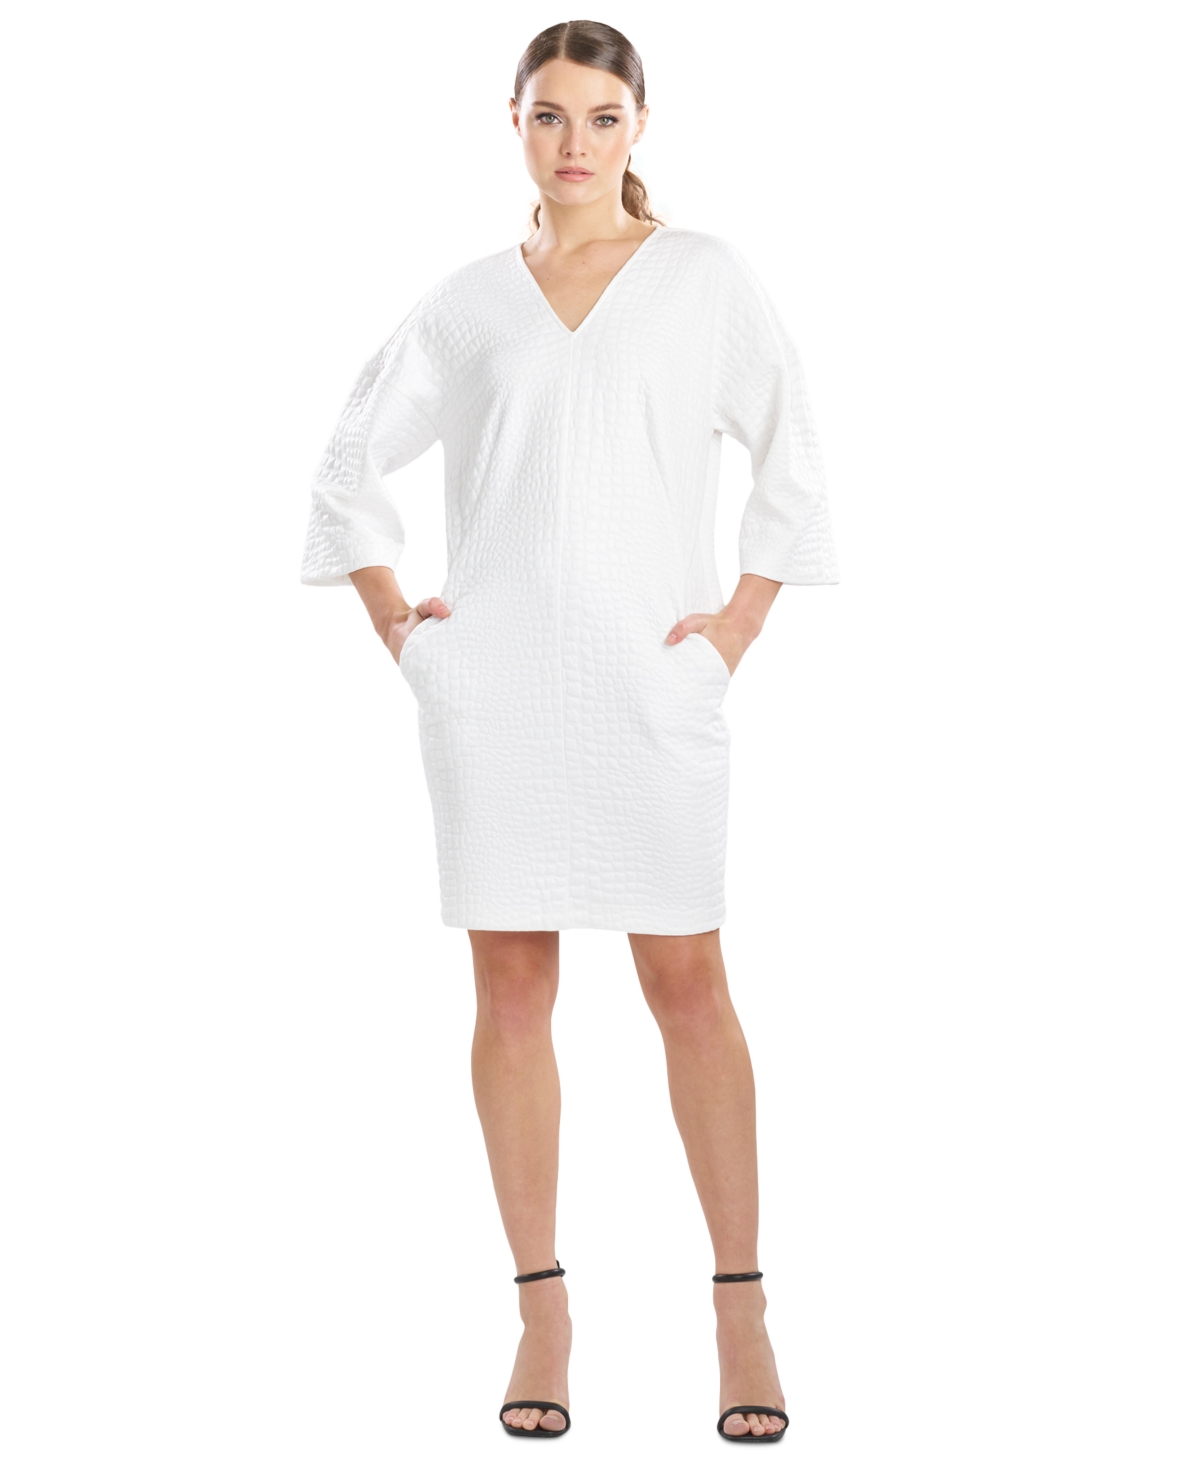 Women's Textured V-Neck 3/4-Sleeve Dress - White